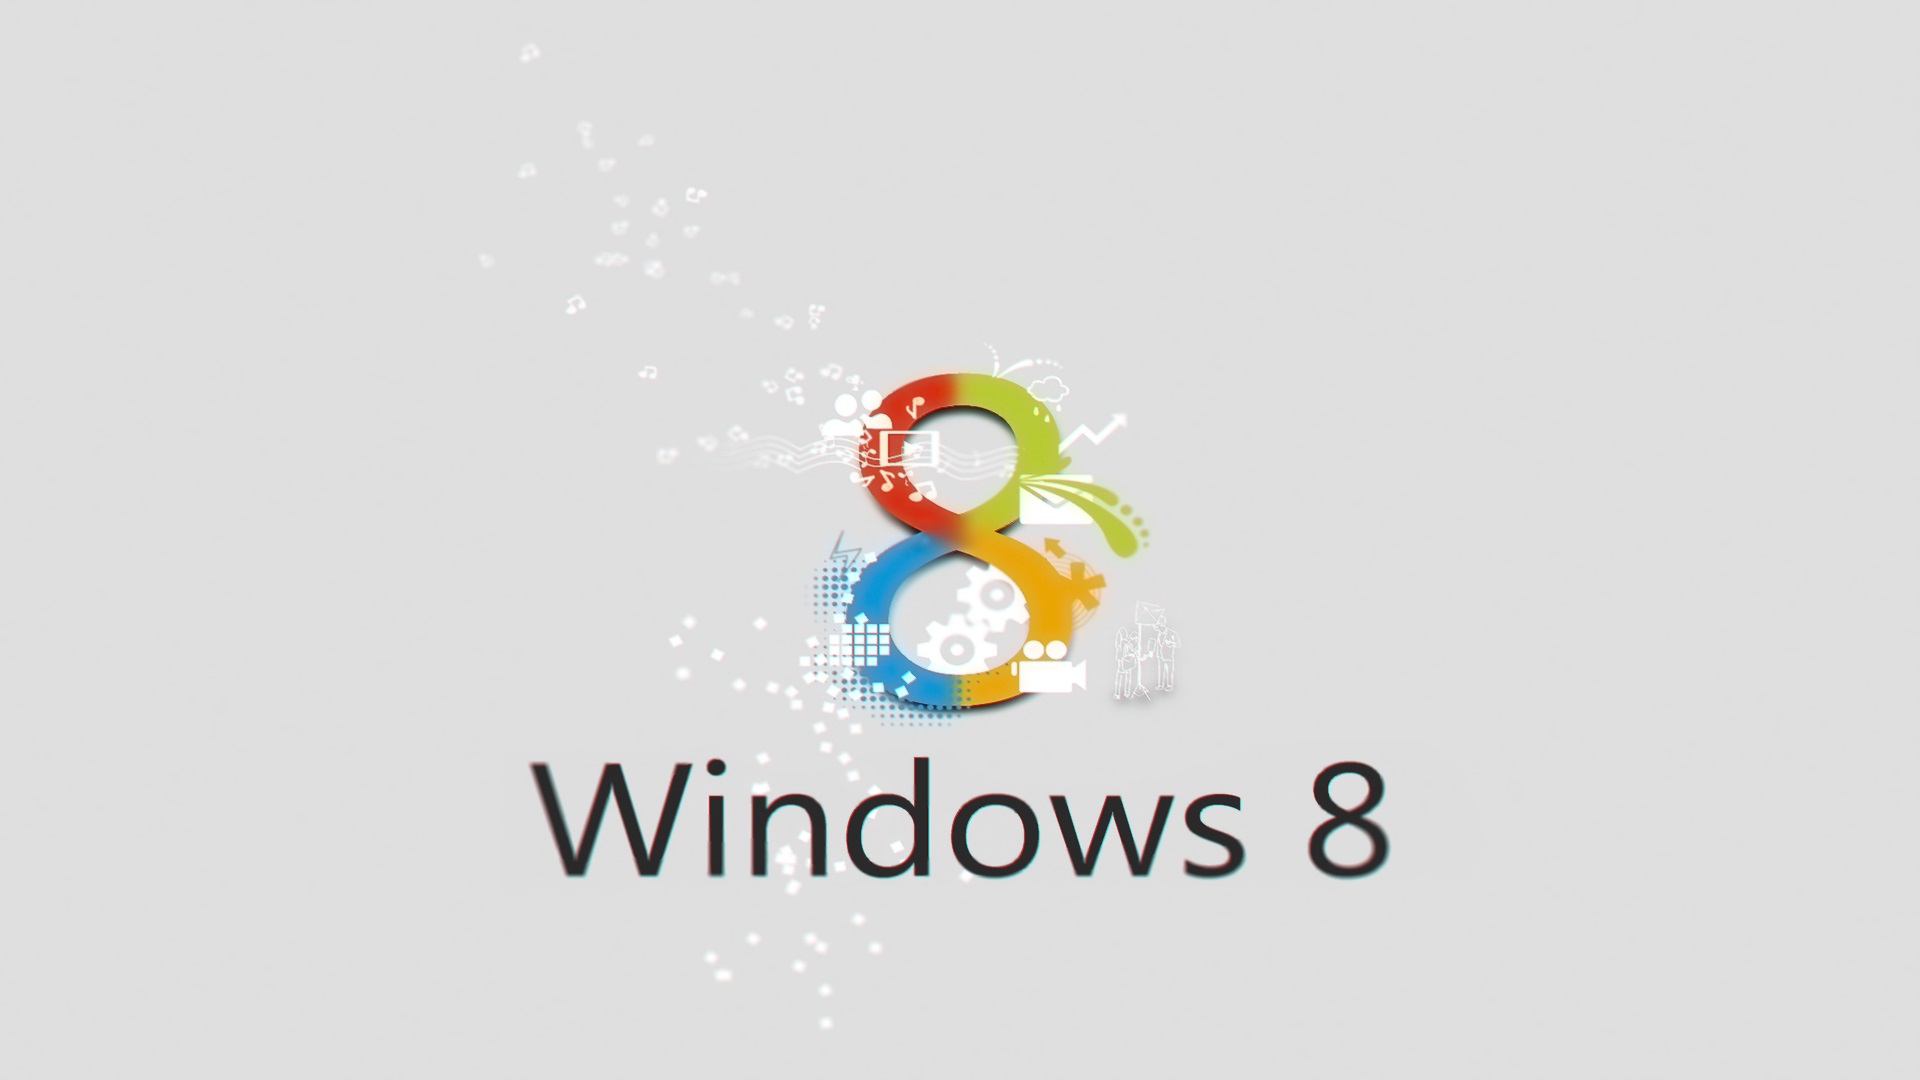 Bạn đang tìm kiếm một hình nền HD Windows 8 đẹp và sắc nét? Tại đây chúng tôi có tất cả những hình nền đó và rất nhiều thứ khác nữa! Hãy truy cập ngay để khám phá bộ sưu tập độc đáo và rộng lớn của chúng tôi và tìm cho mình một bức tranh đầy phong cách và sự tao nhã.